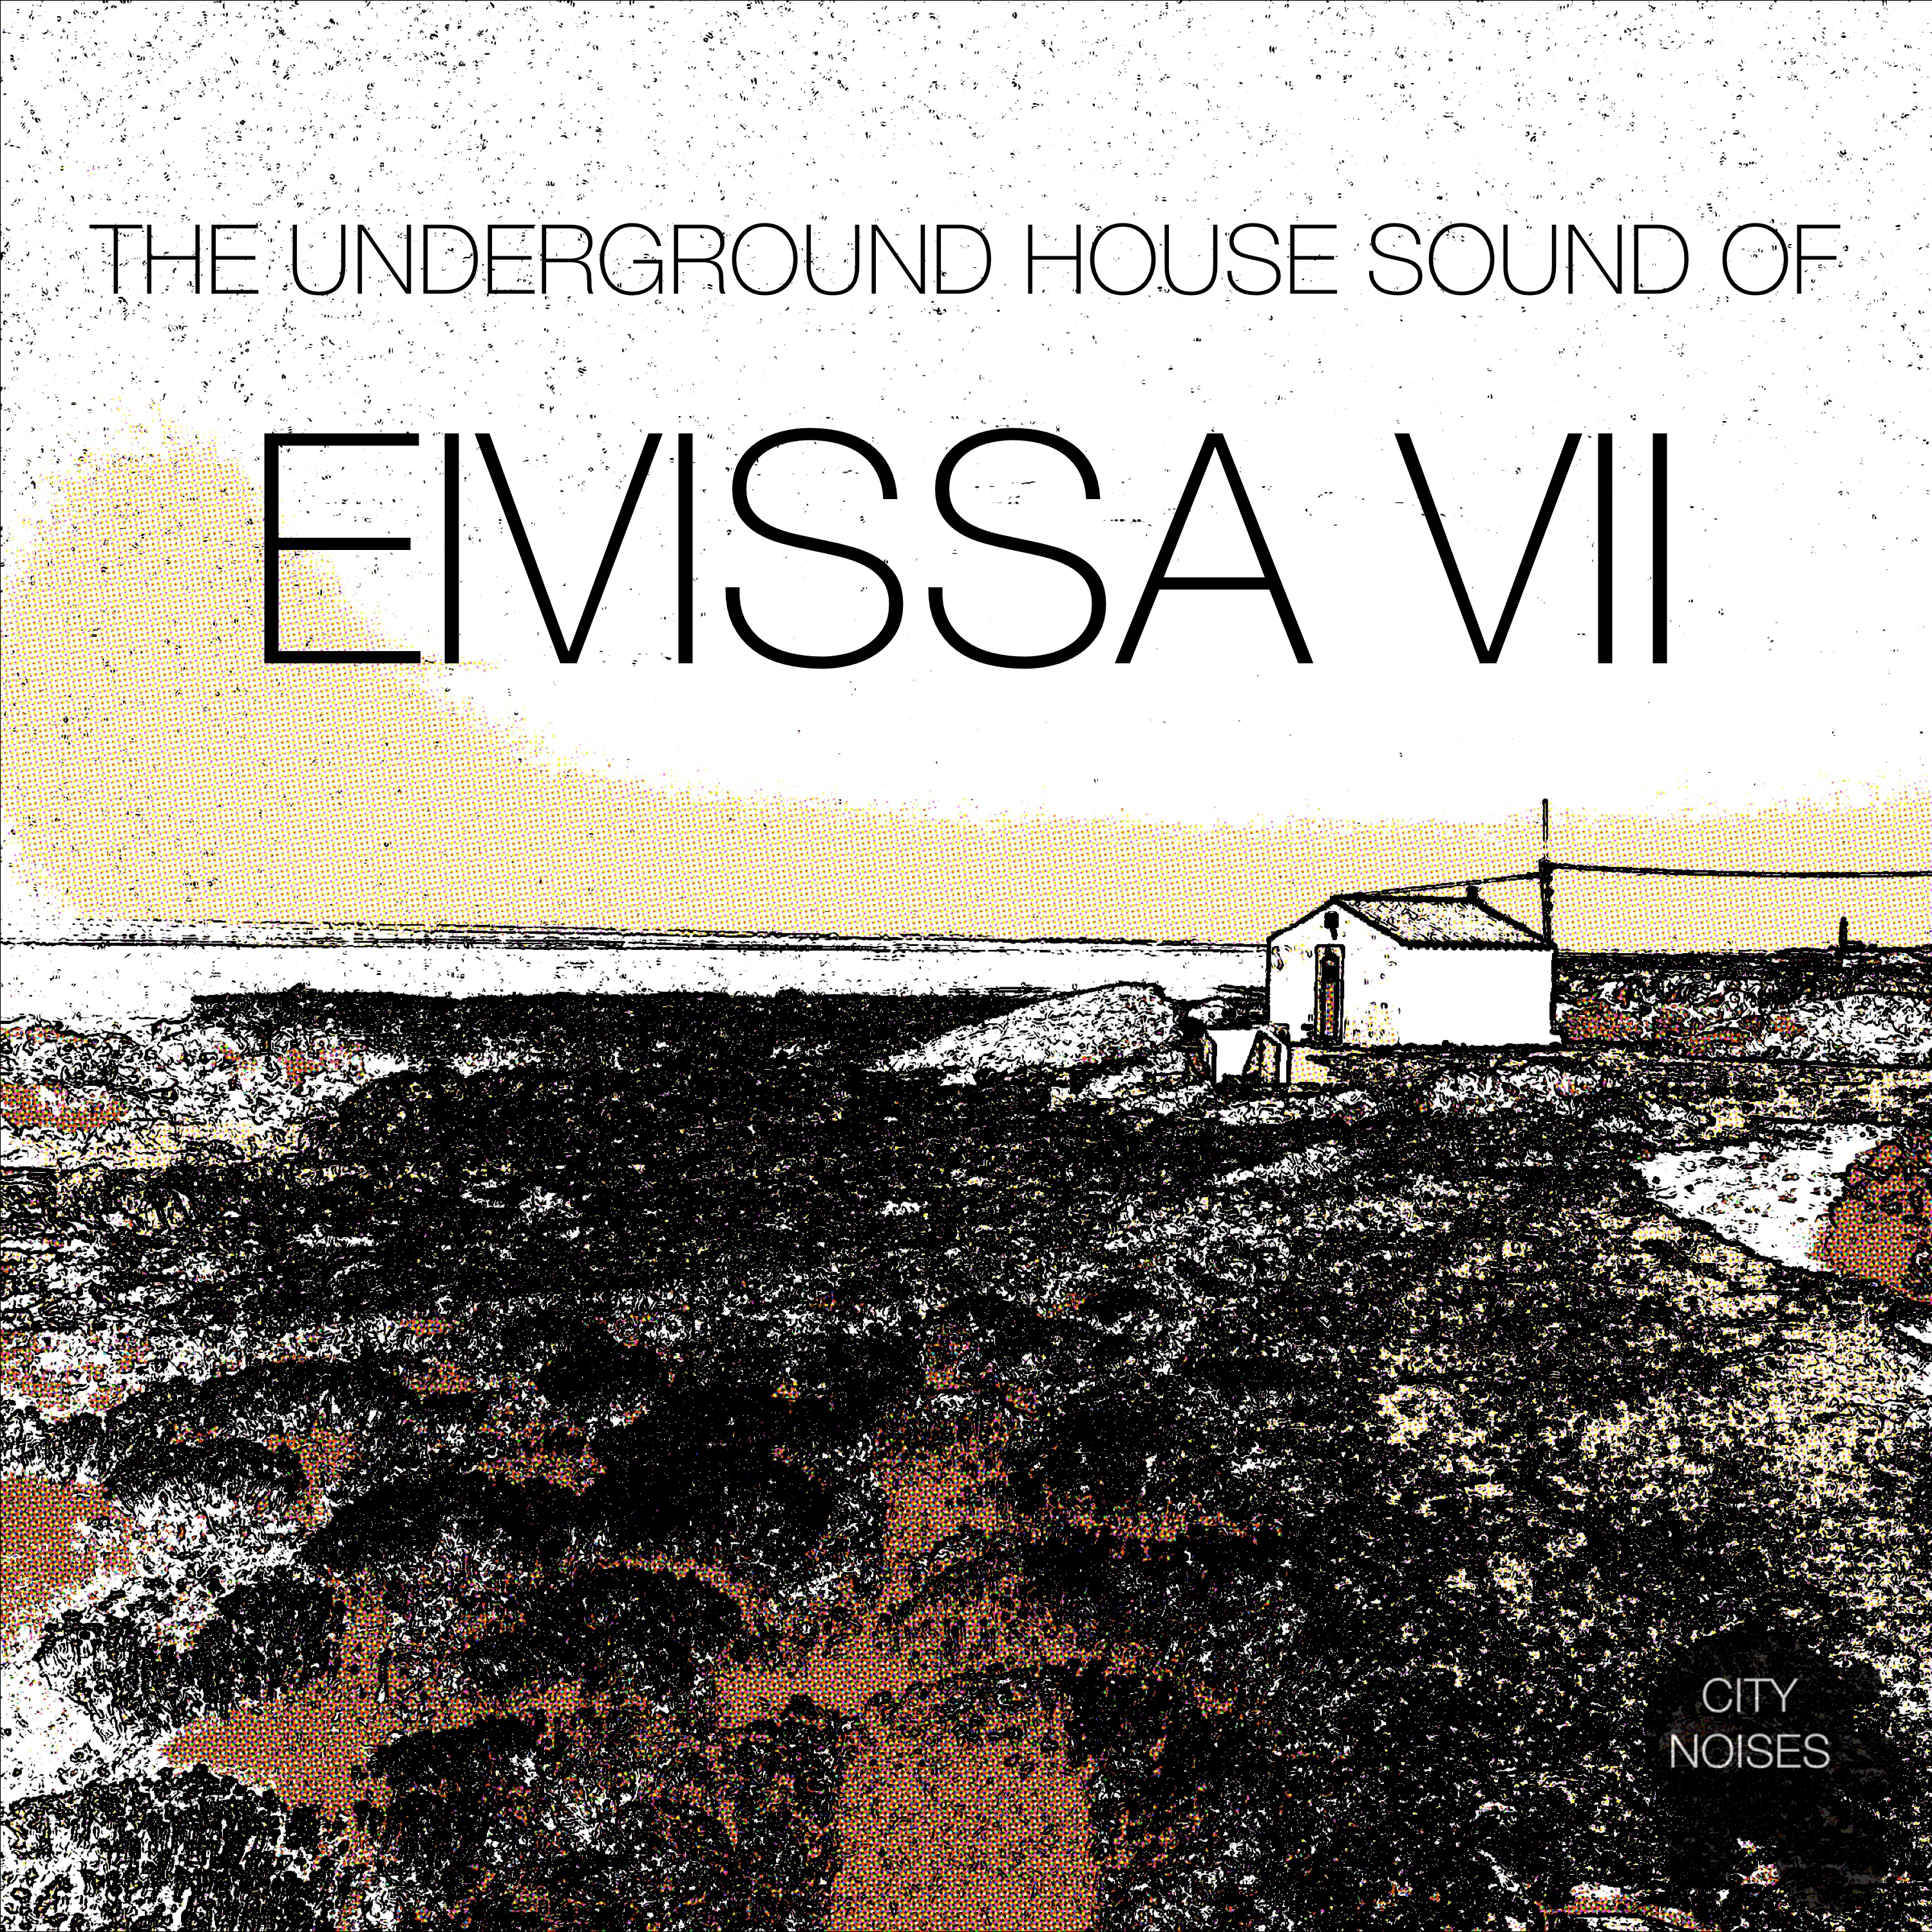 The Underground House Sound of Eivissa, Vol. 7